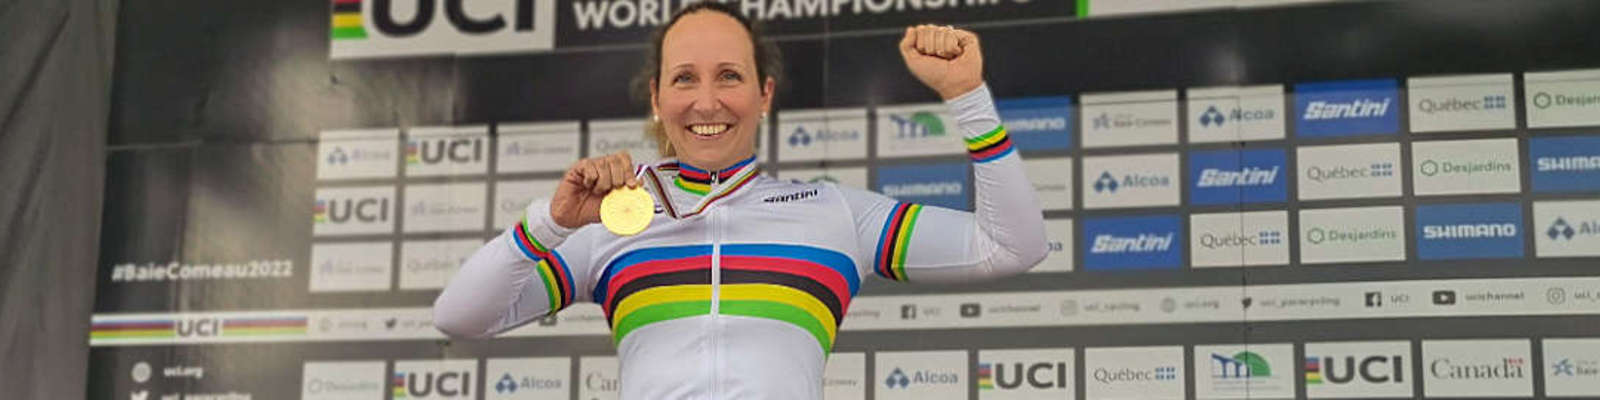 Annika Zeyen jubelnd mit der Goldmedaille und dem Regenbogentrikot auf dem Siegerpodest